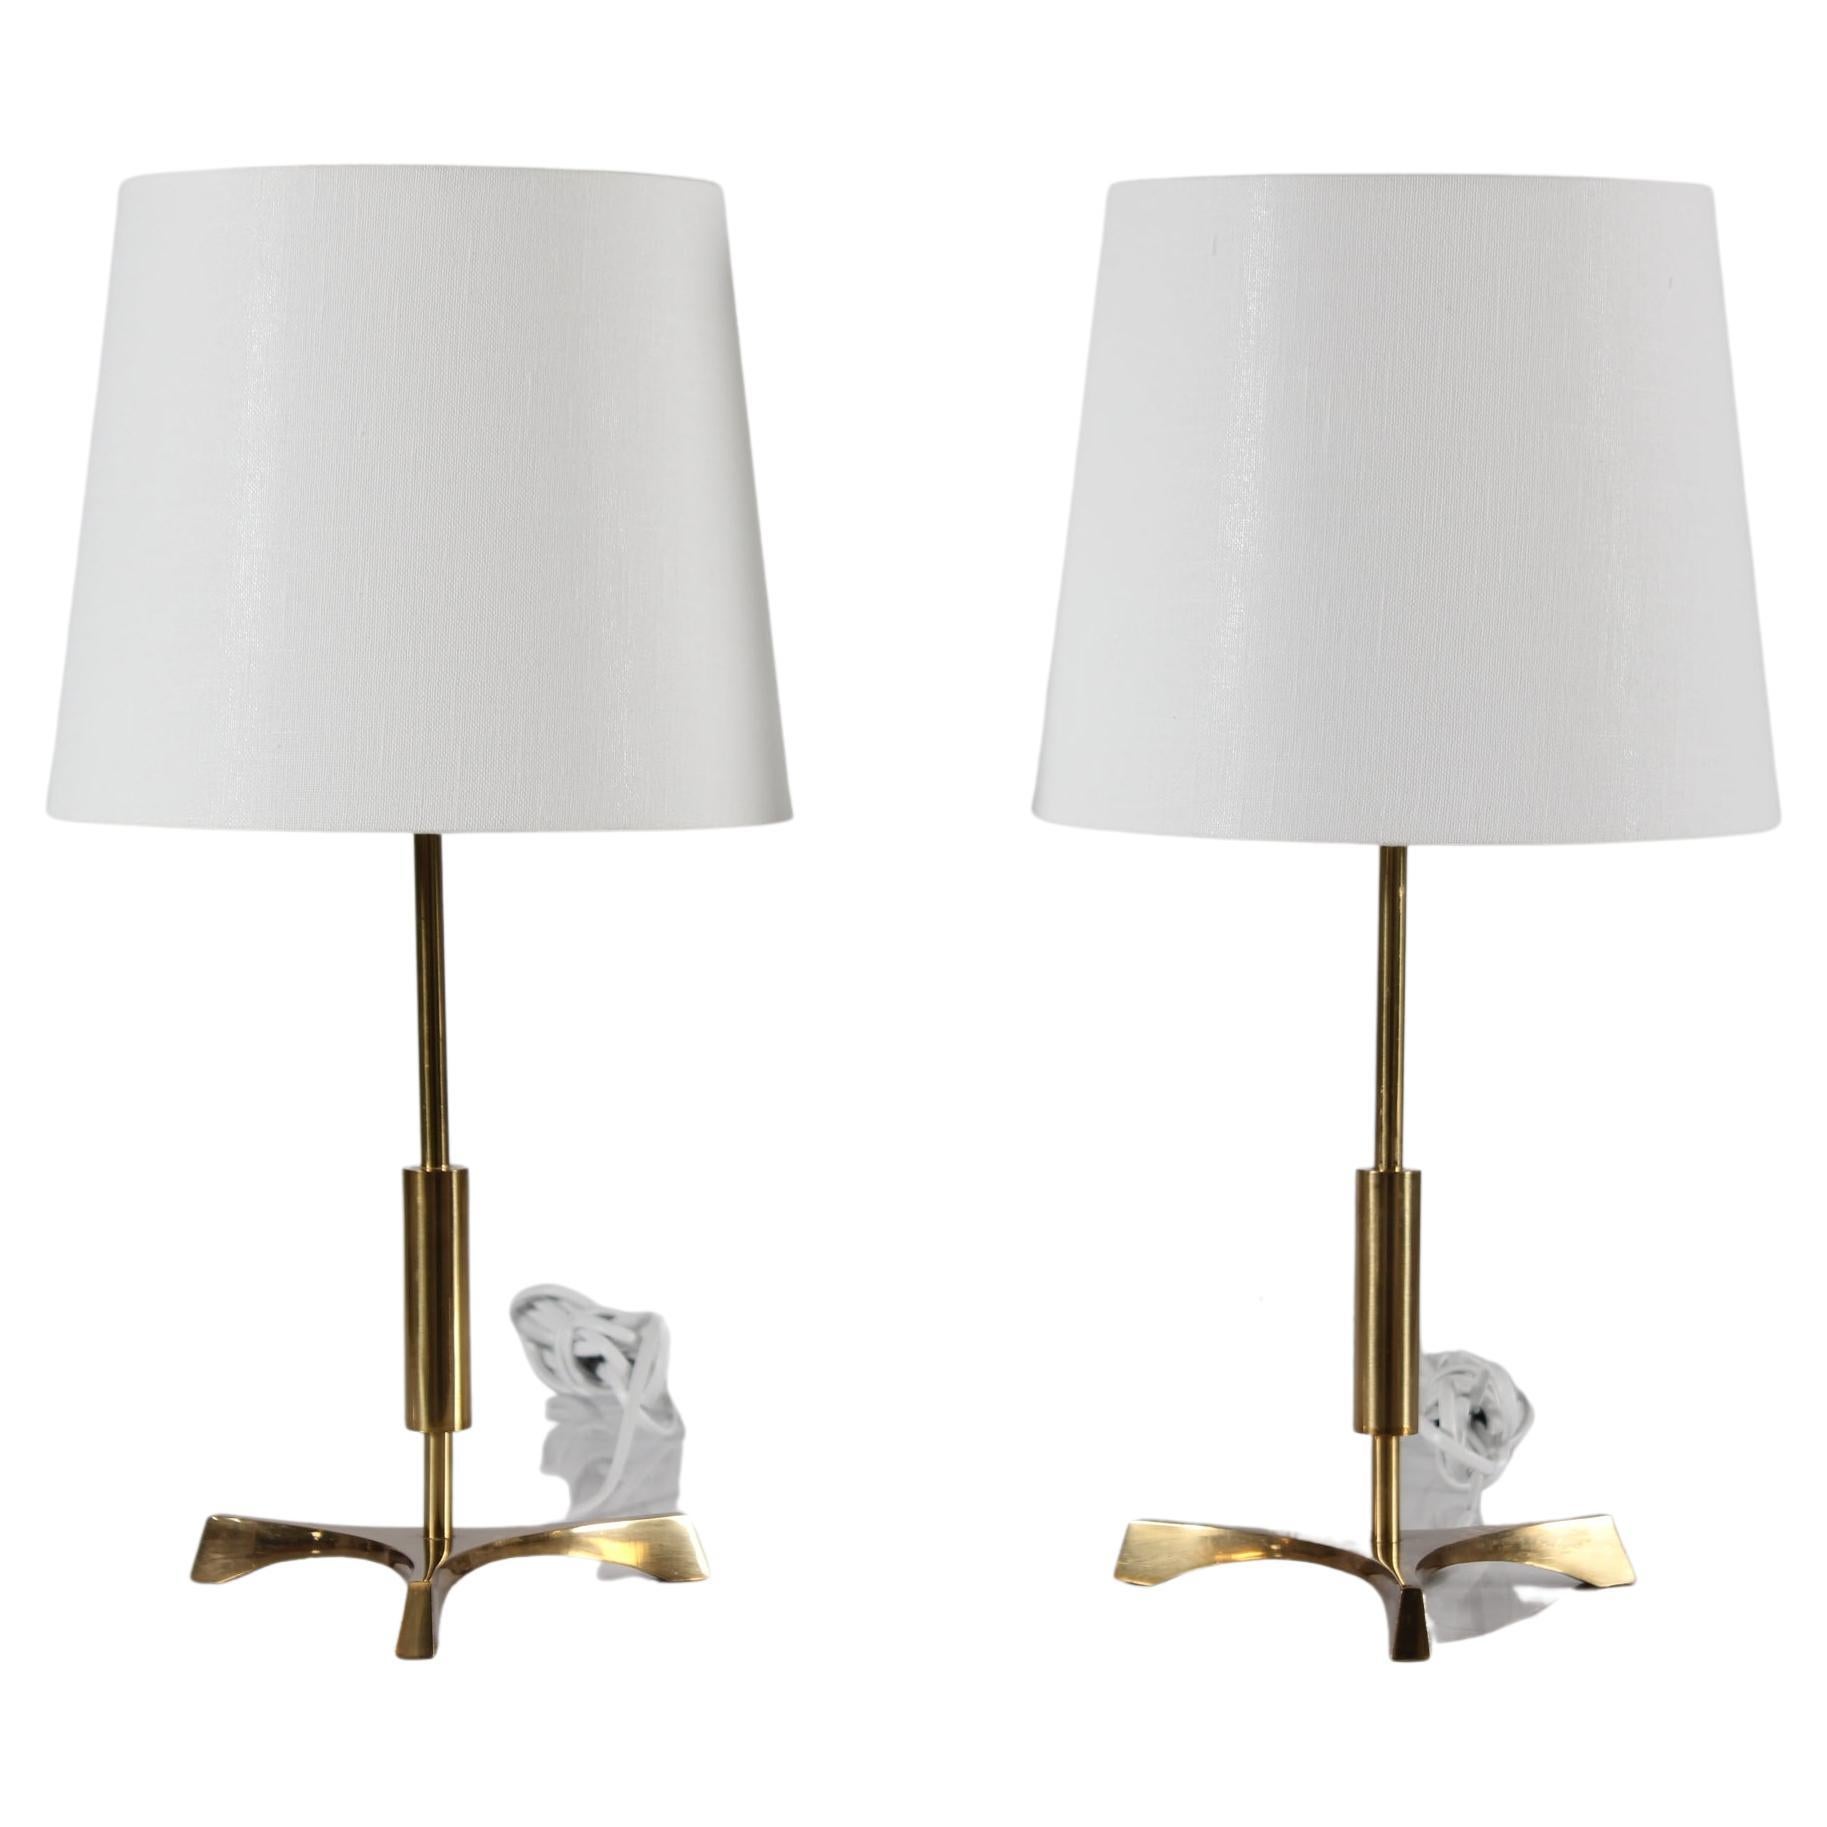 Zwei dänische Dreibein-Tischlampen im Jo Hammerborg-Stil aus der Mitte des Jahrhunderts.
Die Lampen sind aus Messing in den 1960er Jahren hergestellt

Dazu gehört ein Paar neuer, in Dänemark entworfener Lampenschirme.
Der Schirm ist aus gewebtem